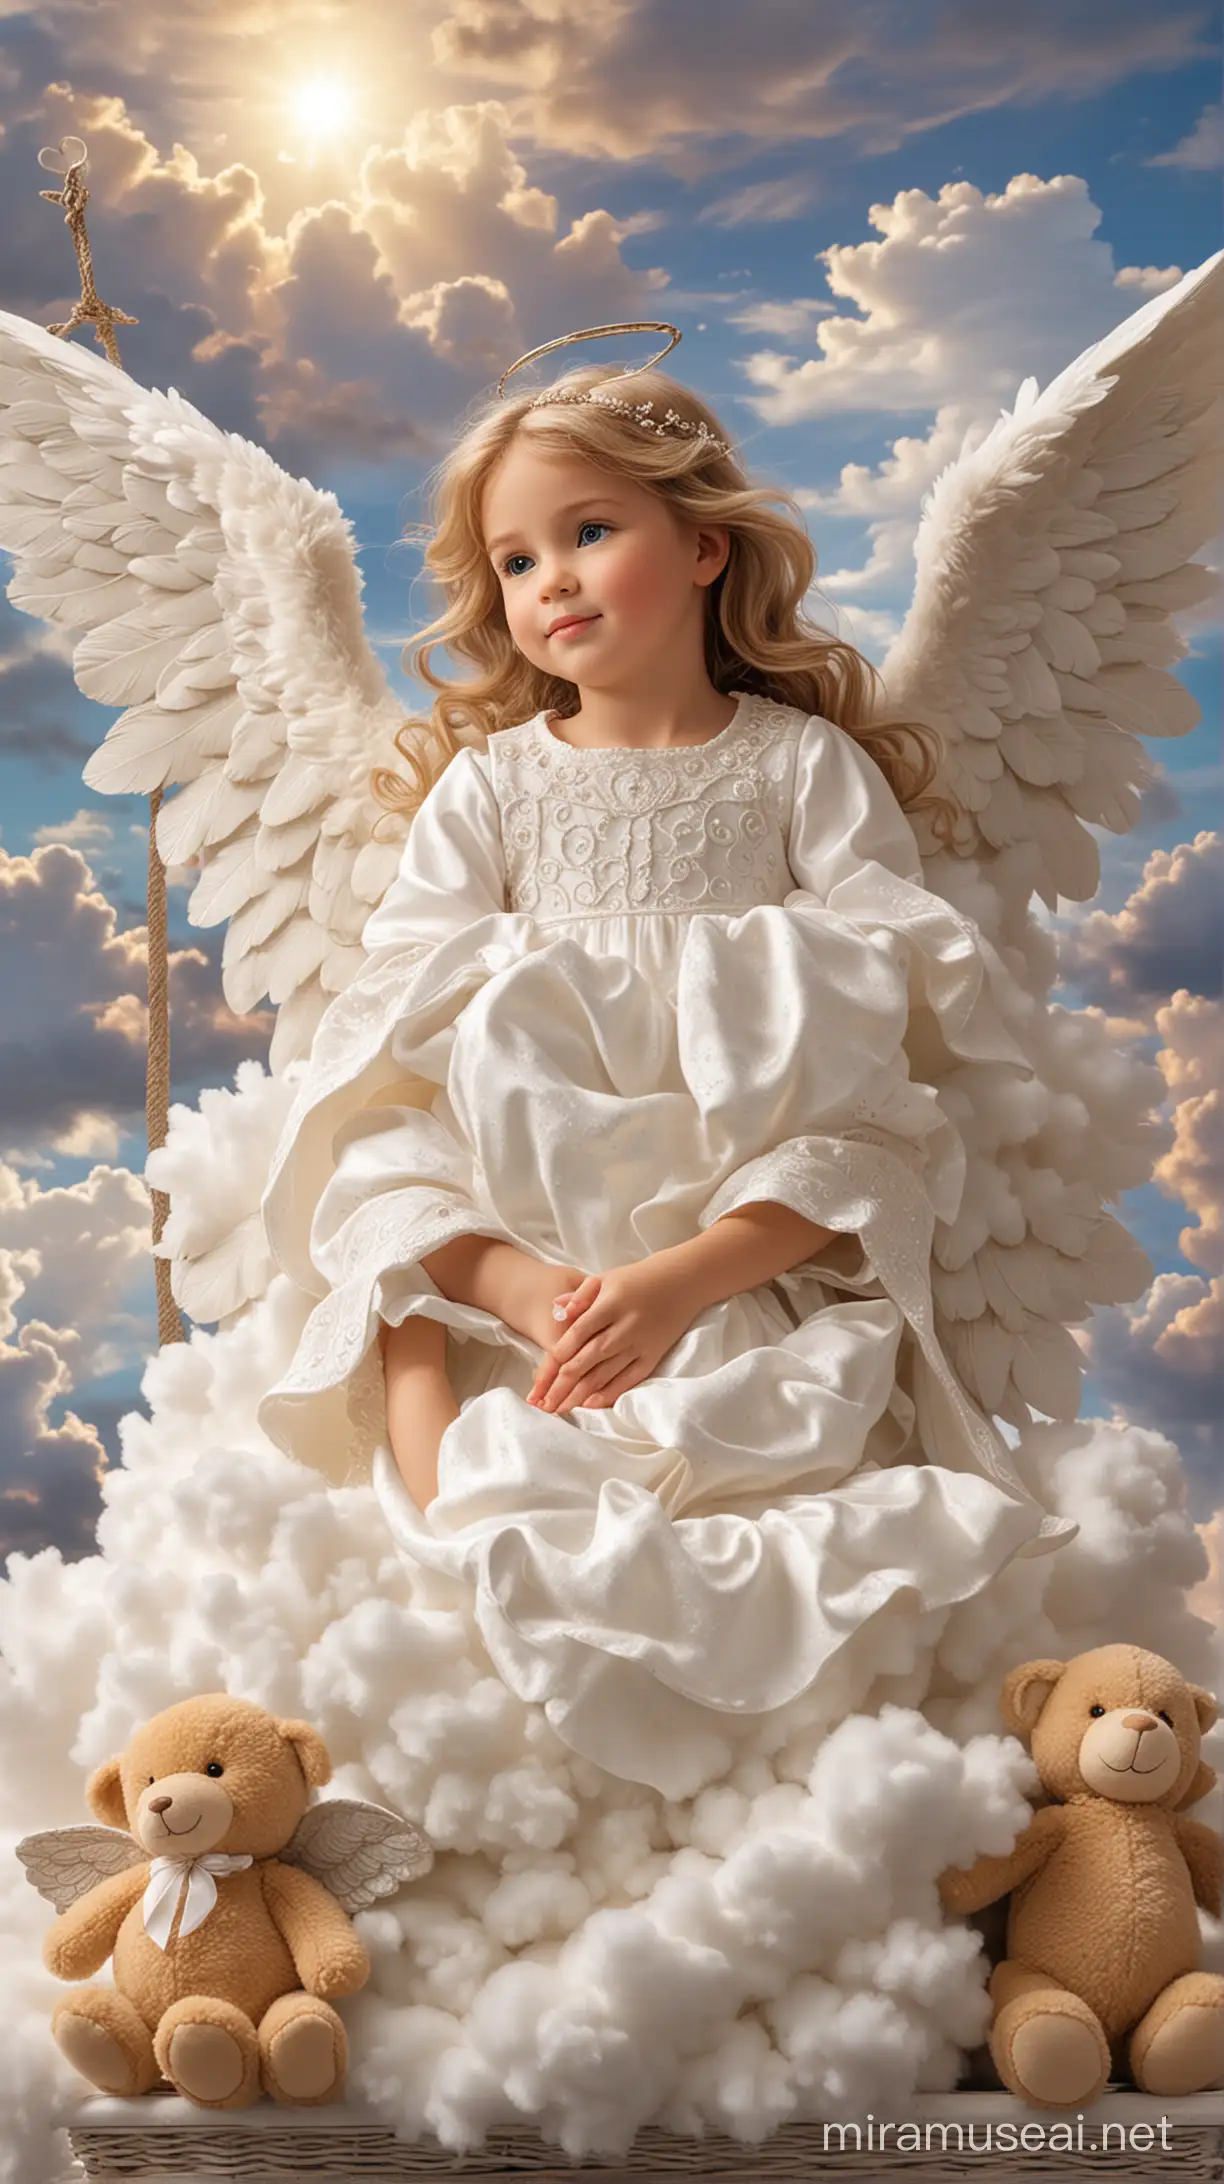 bel ange Un bel ange  lumineux pleine grandeur, veillant sur une peite fille dans son berceau ,sur des nuages brillants et de peluches près du berceau